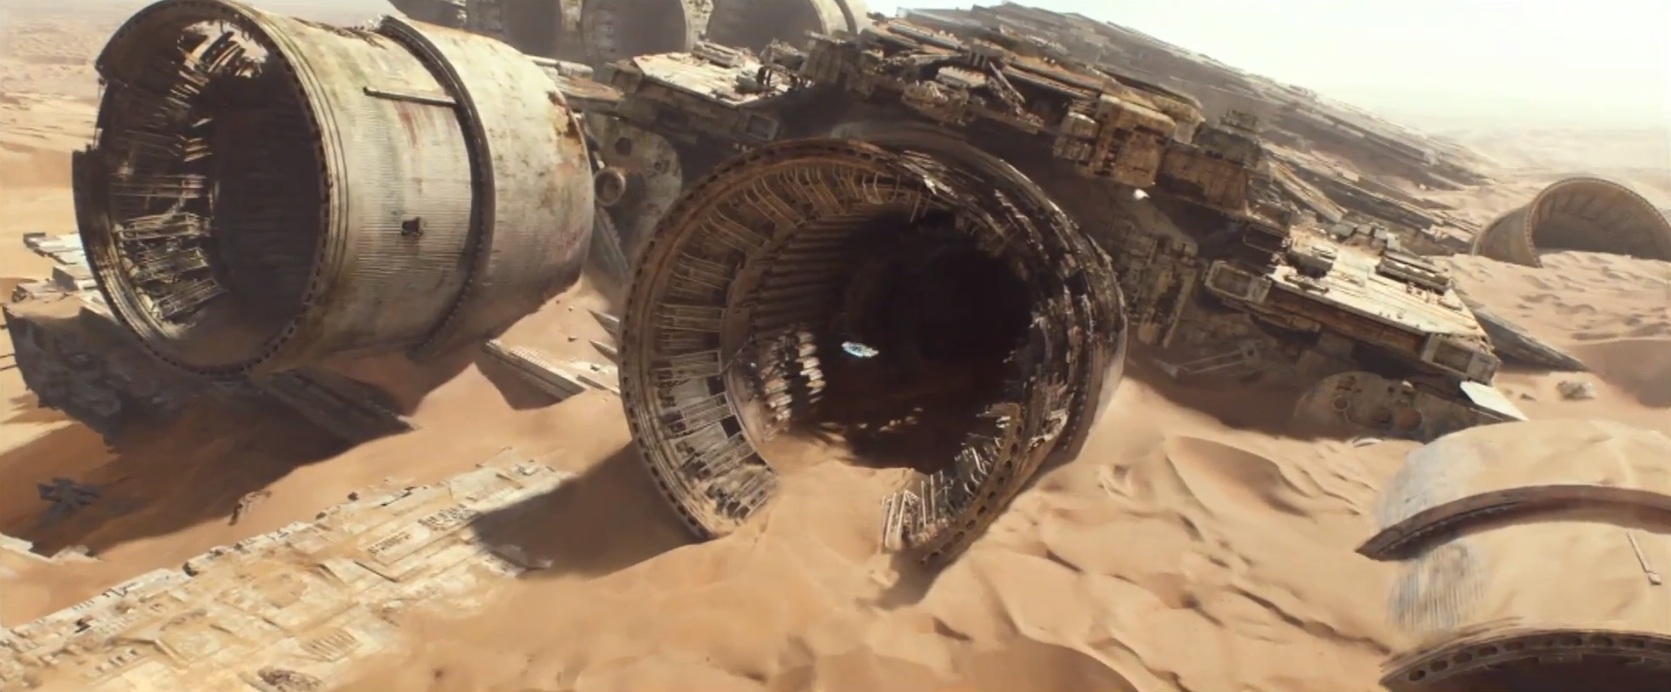 Star Wars: The Force Awakens teaser trailer